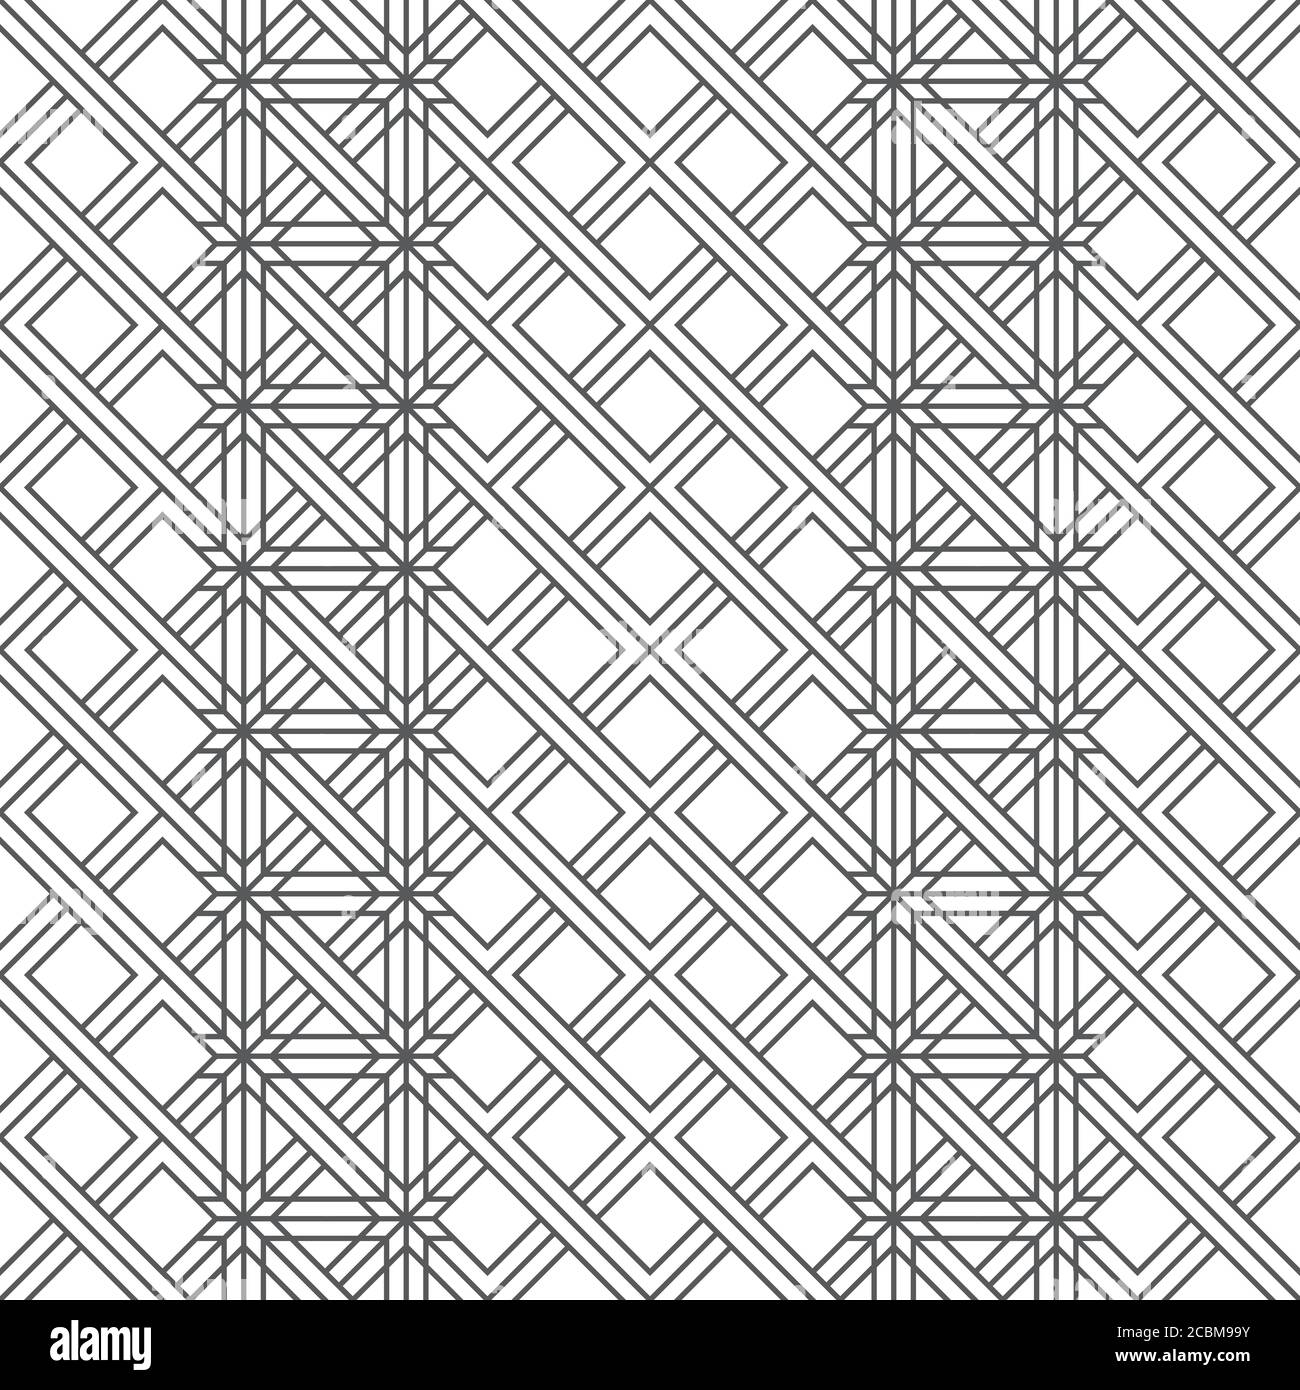 Vektor nahtloses Muster. Moderne, regelmäßig wiederholende geometrische Textur mit dünnen Linien, die abwechselnd Ornament bilden. Sich schneidende Streifen. Raute Stock Vektor